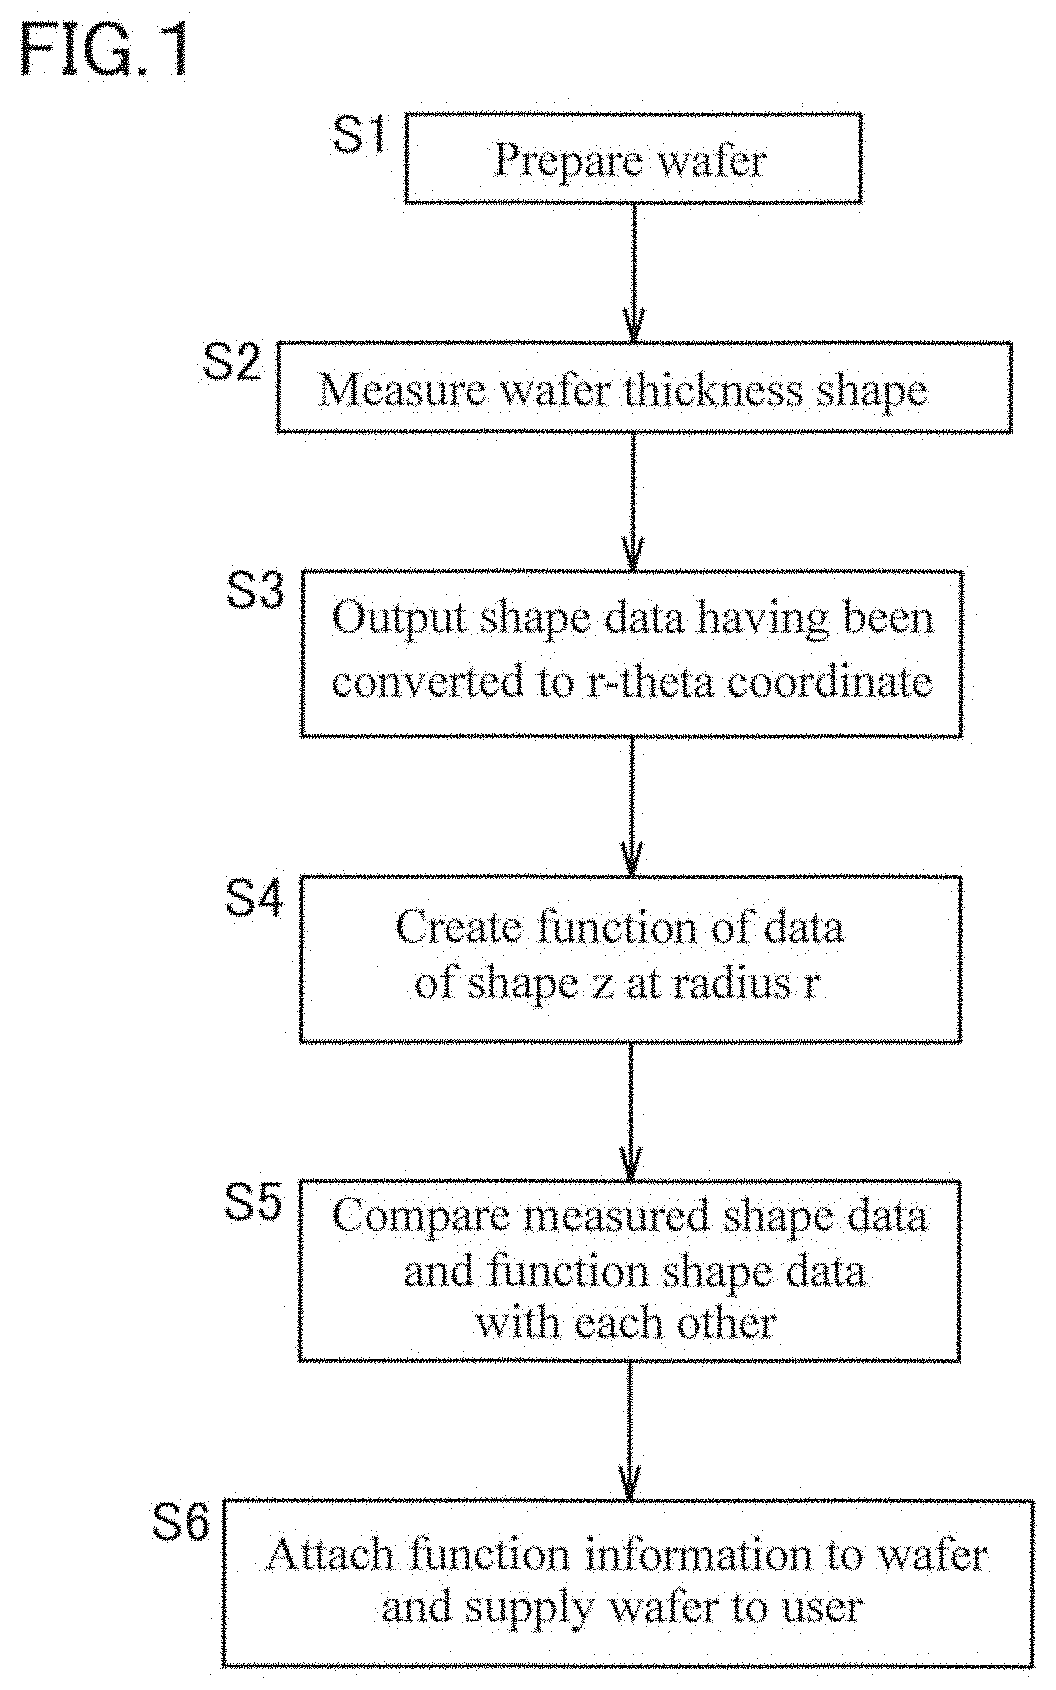 Method for creating wafer shape data